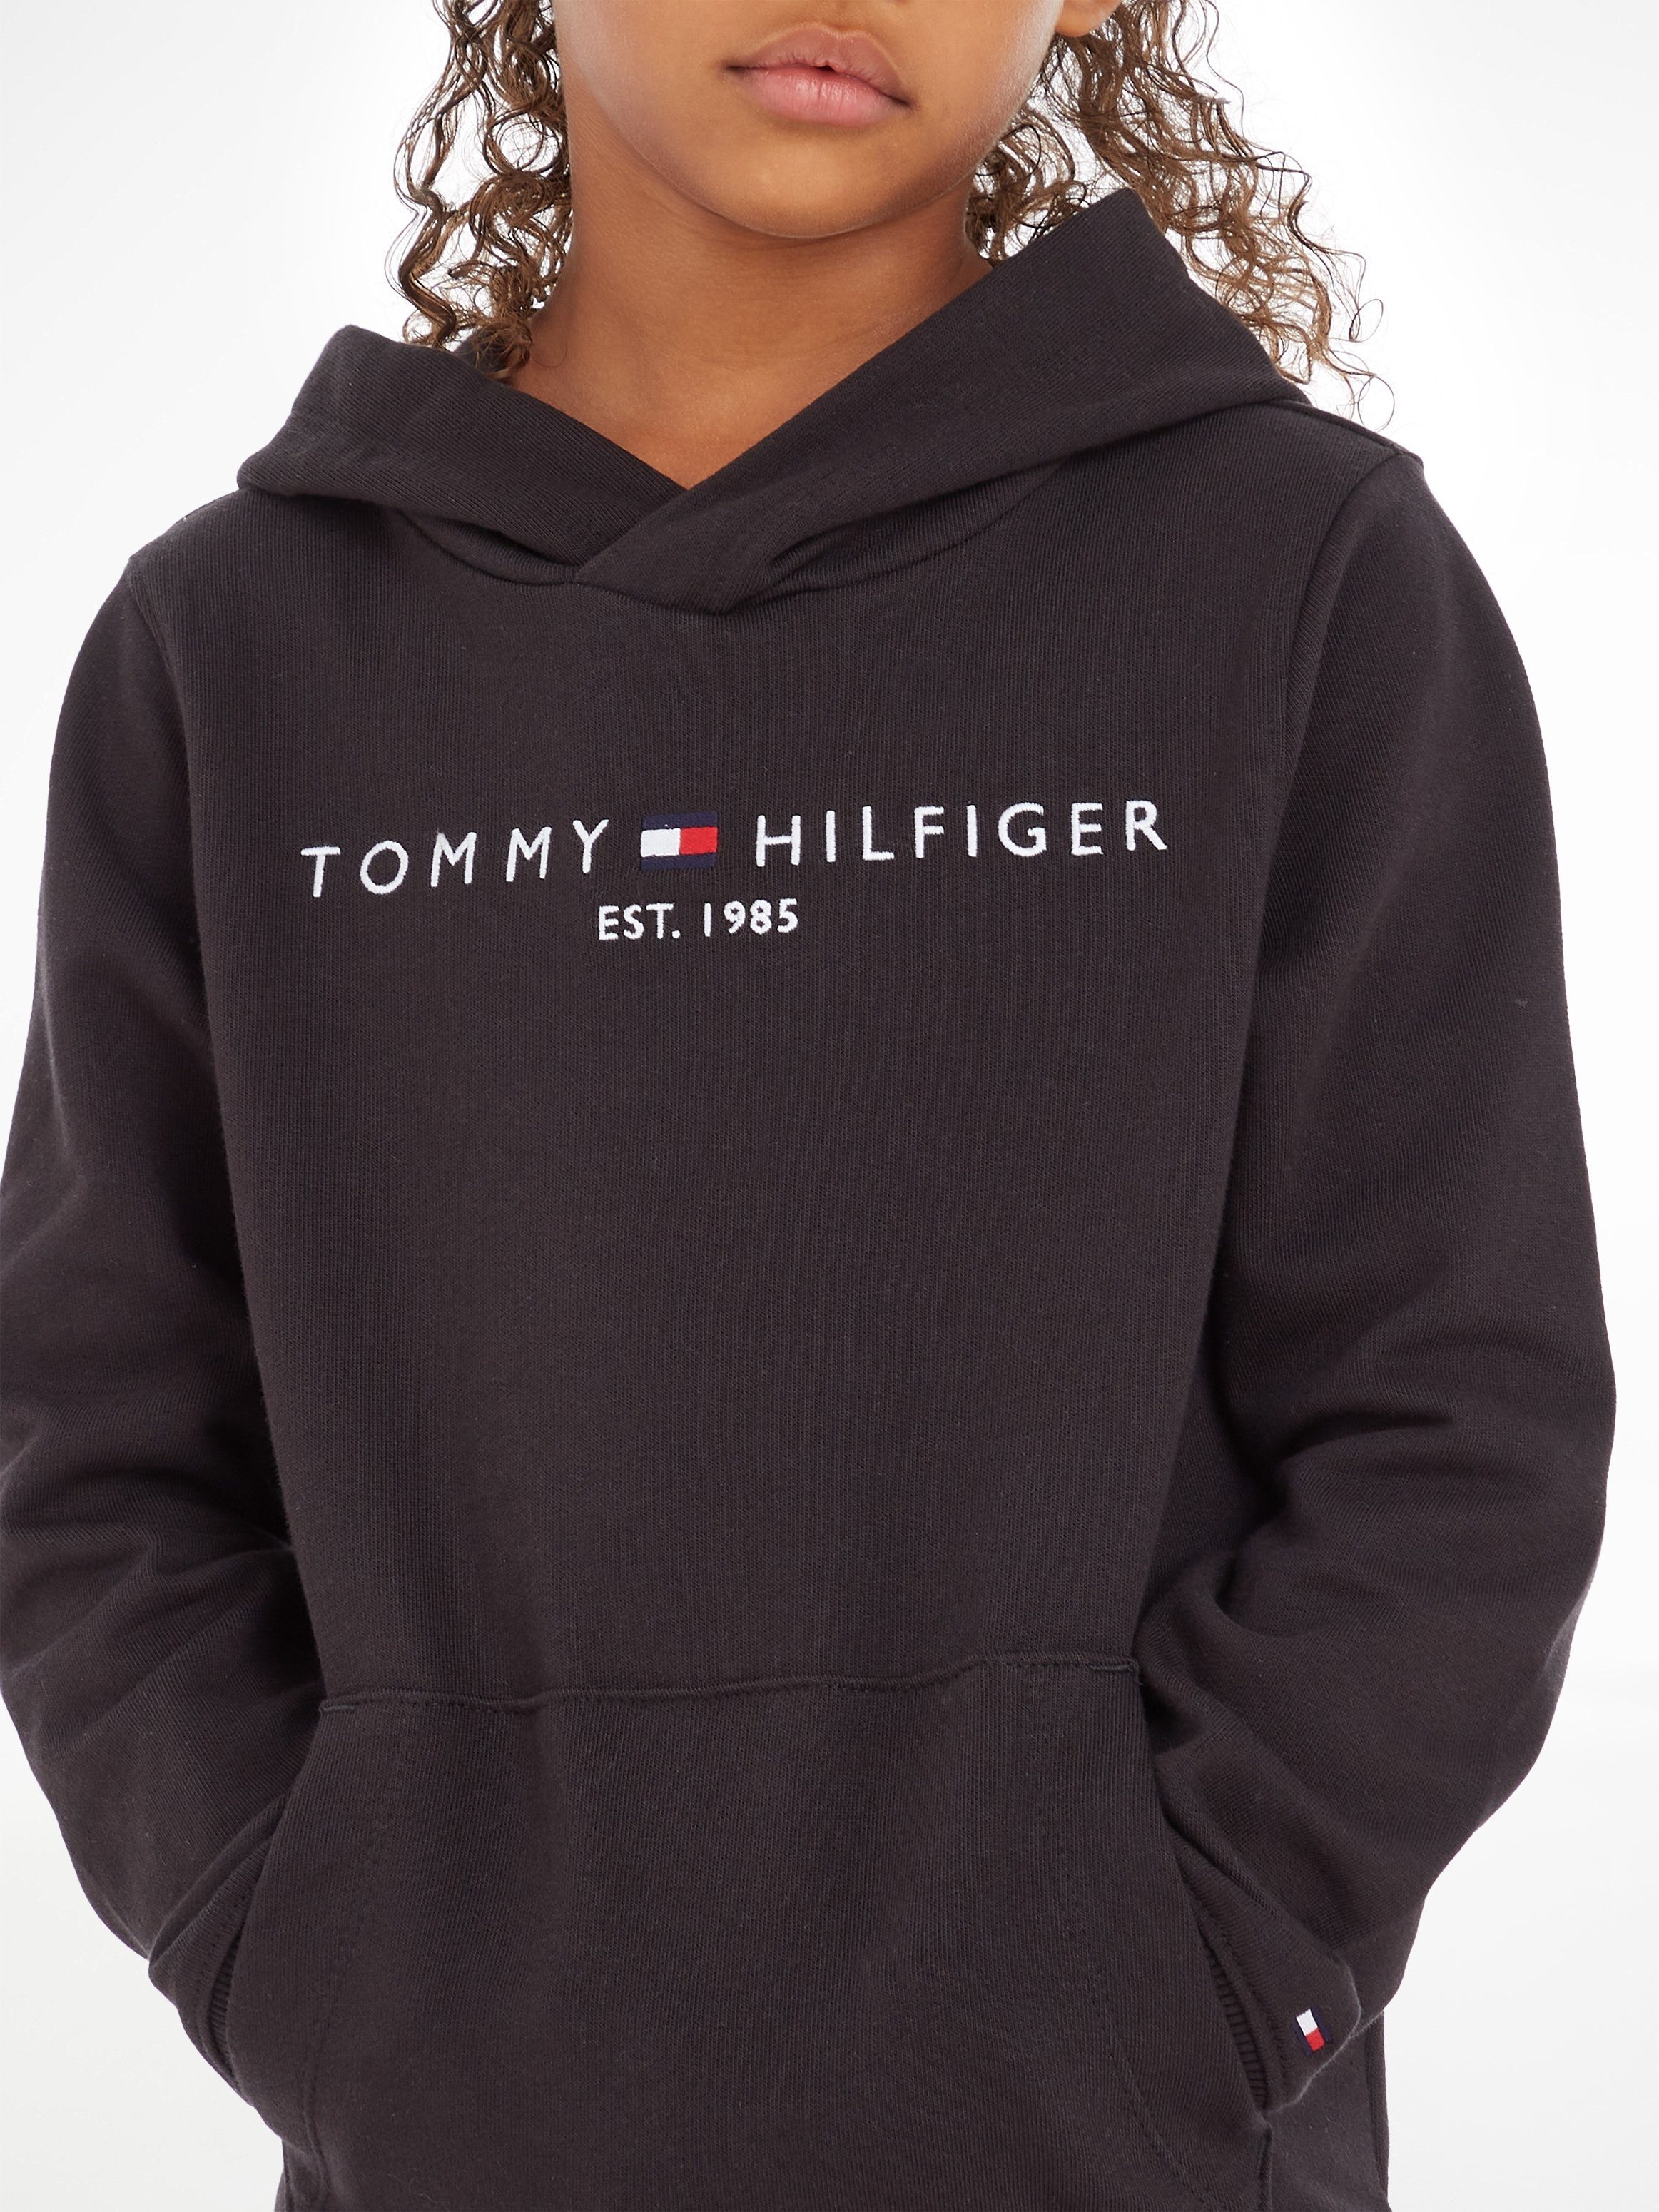 Mädchen MiniMe,für Kapuzensweatshirt und Kids Hilfiger Jungen ESSENTIAL Kinder Tommy Junior HOODIE